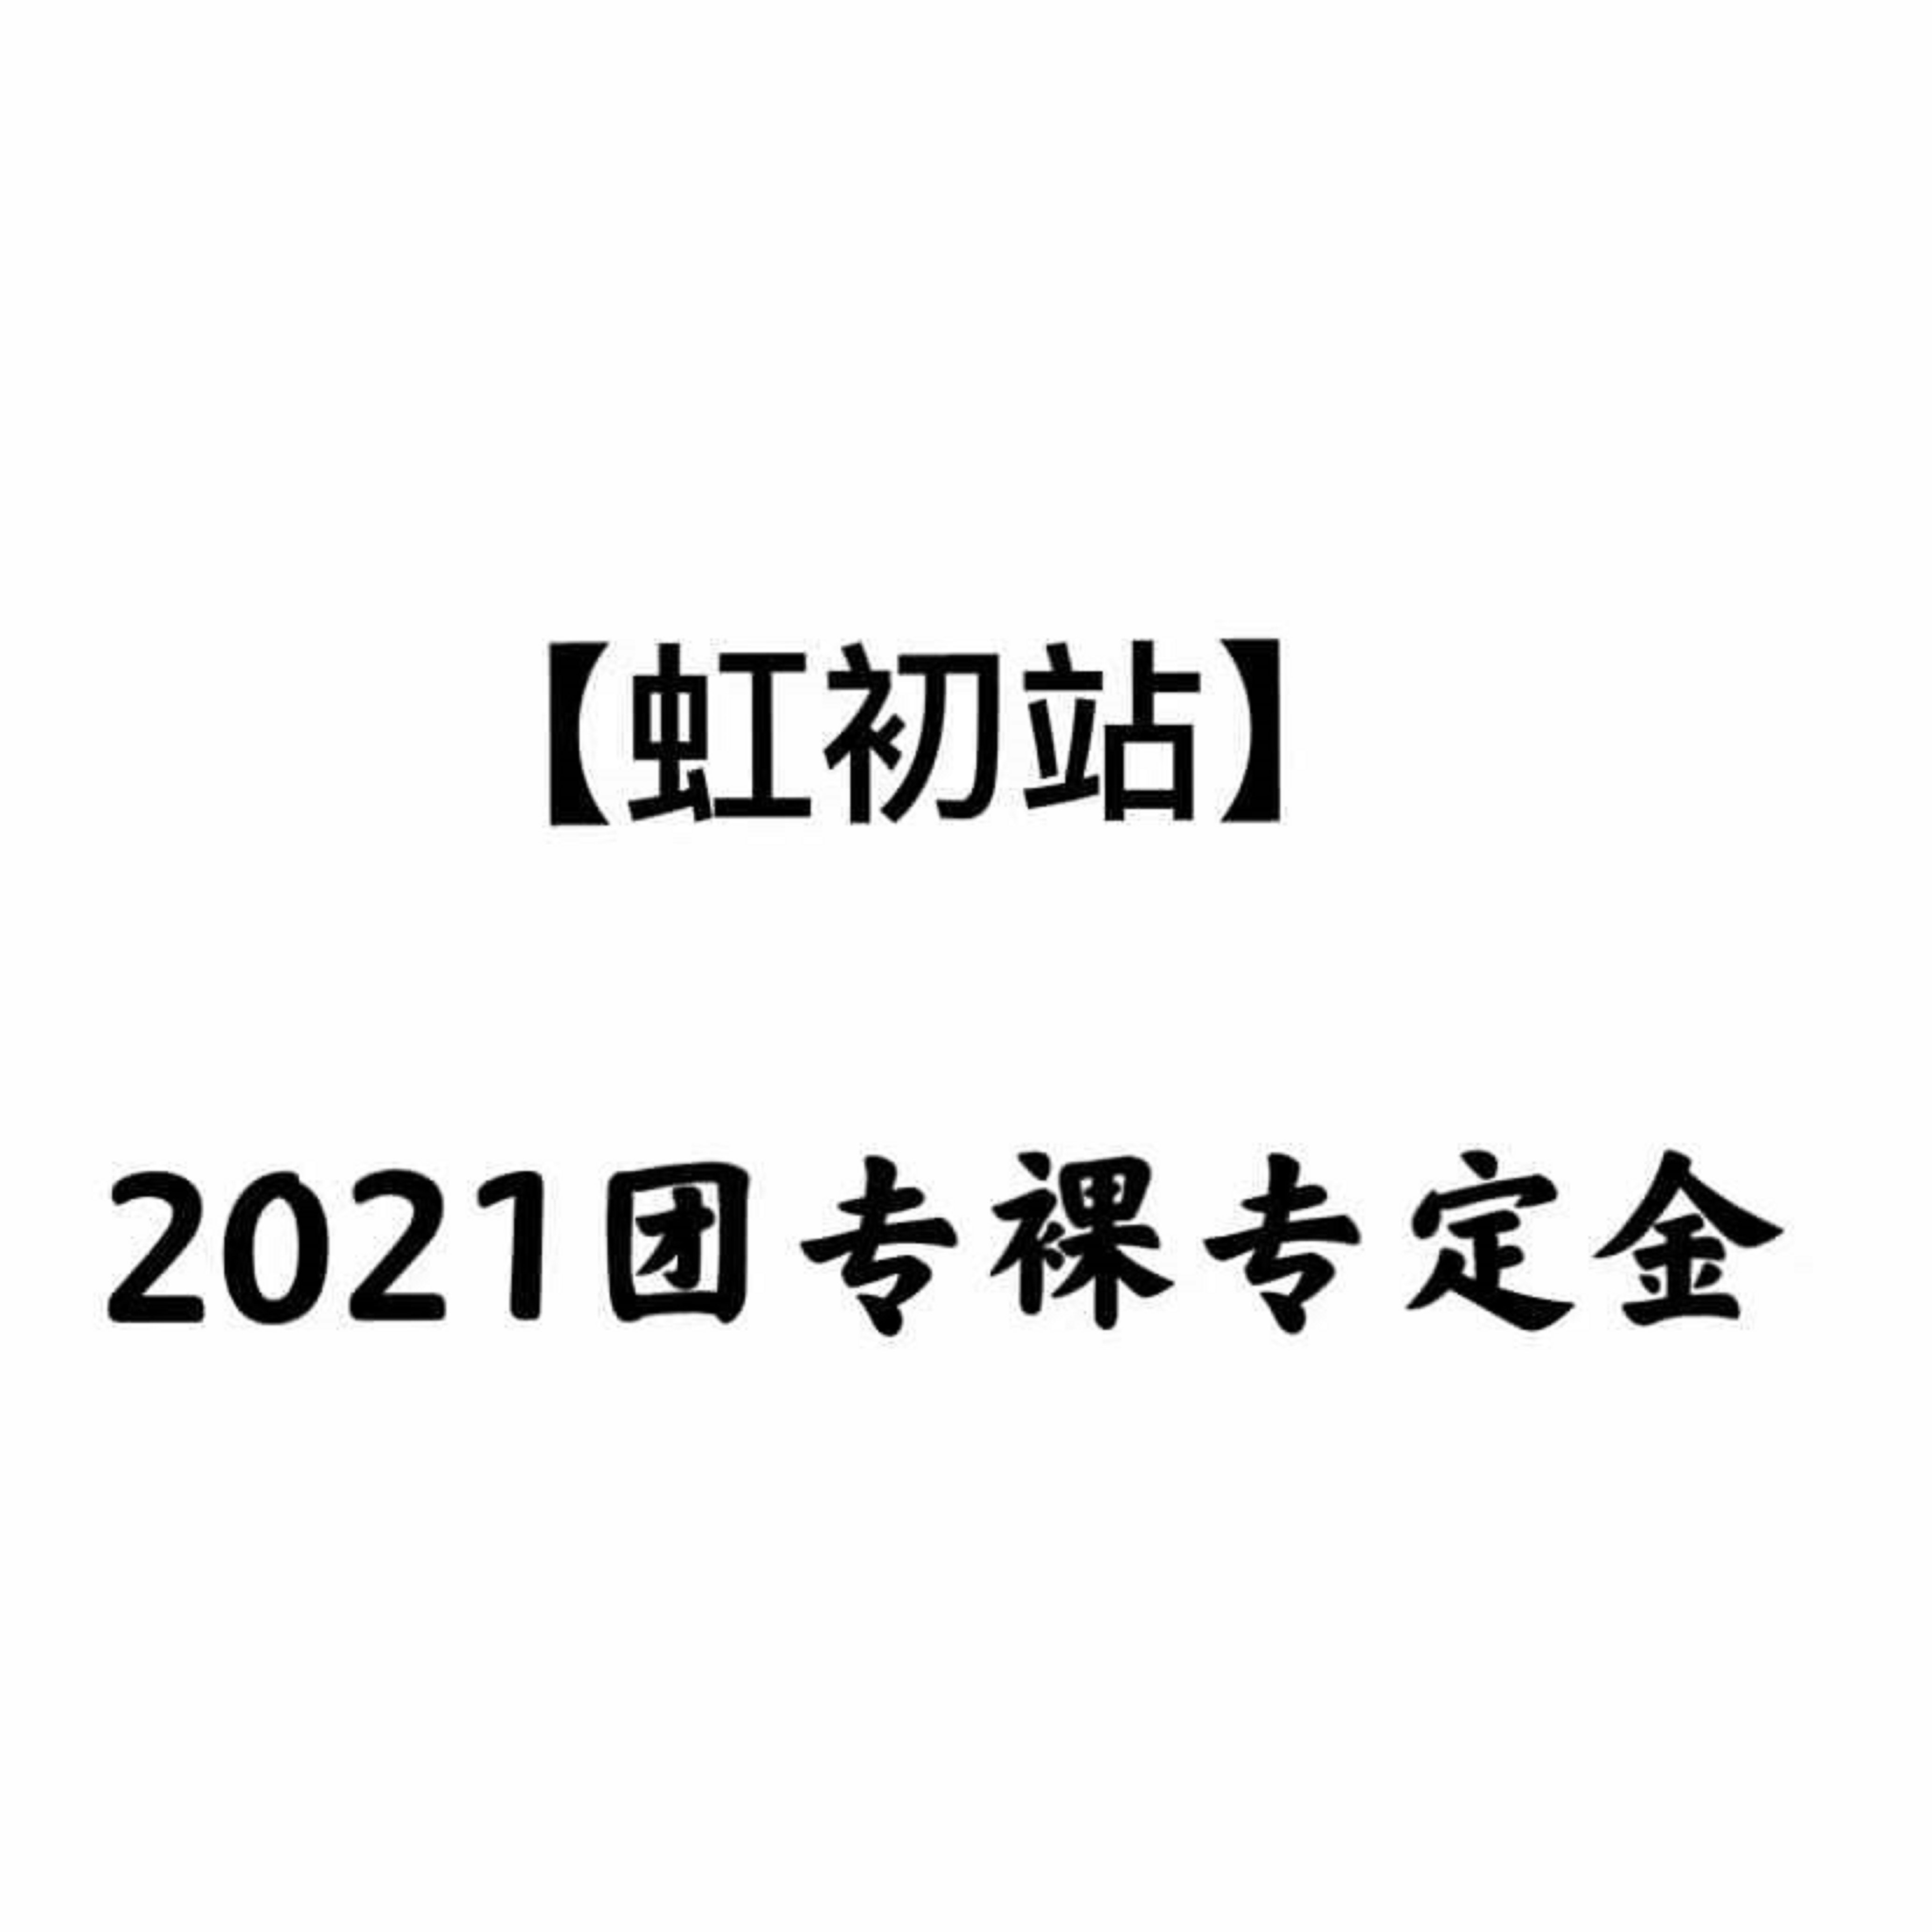 [定金 裸专] 2021团专裸专运回定金_虹初站